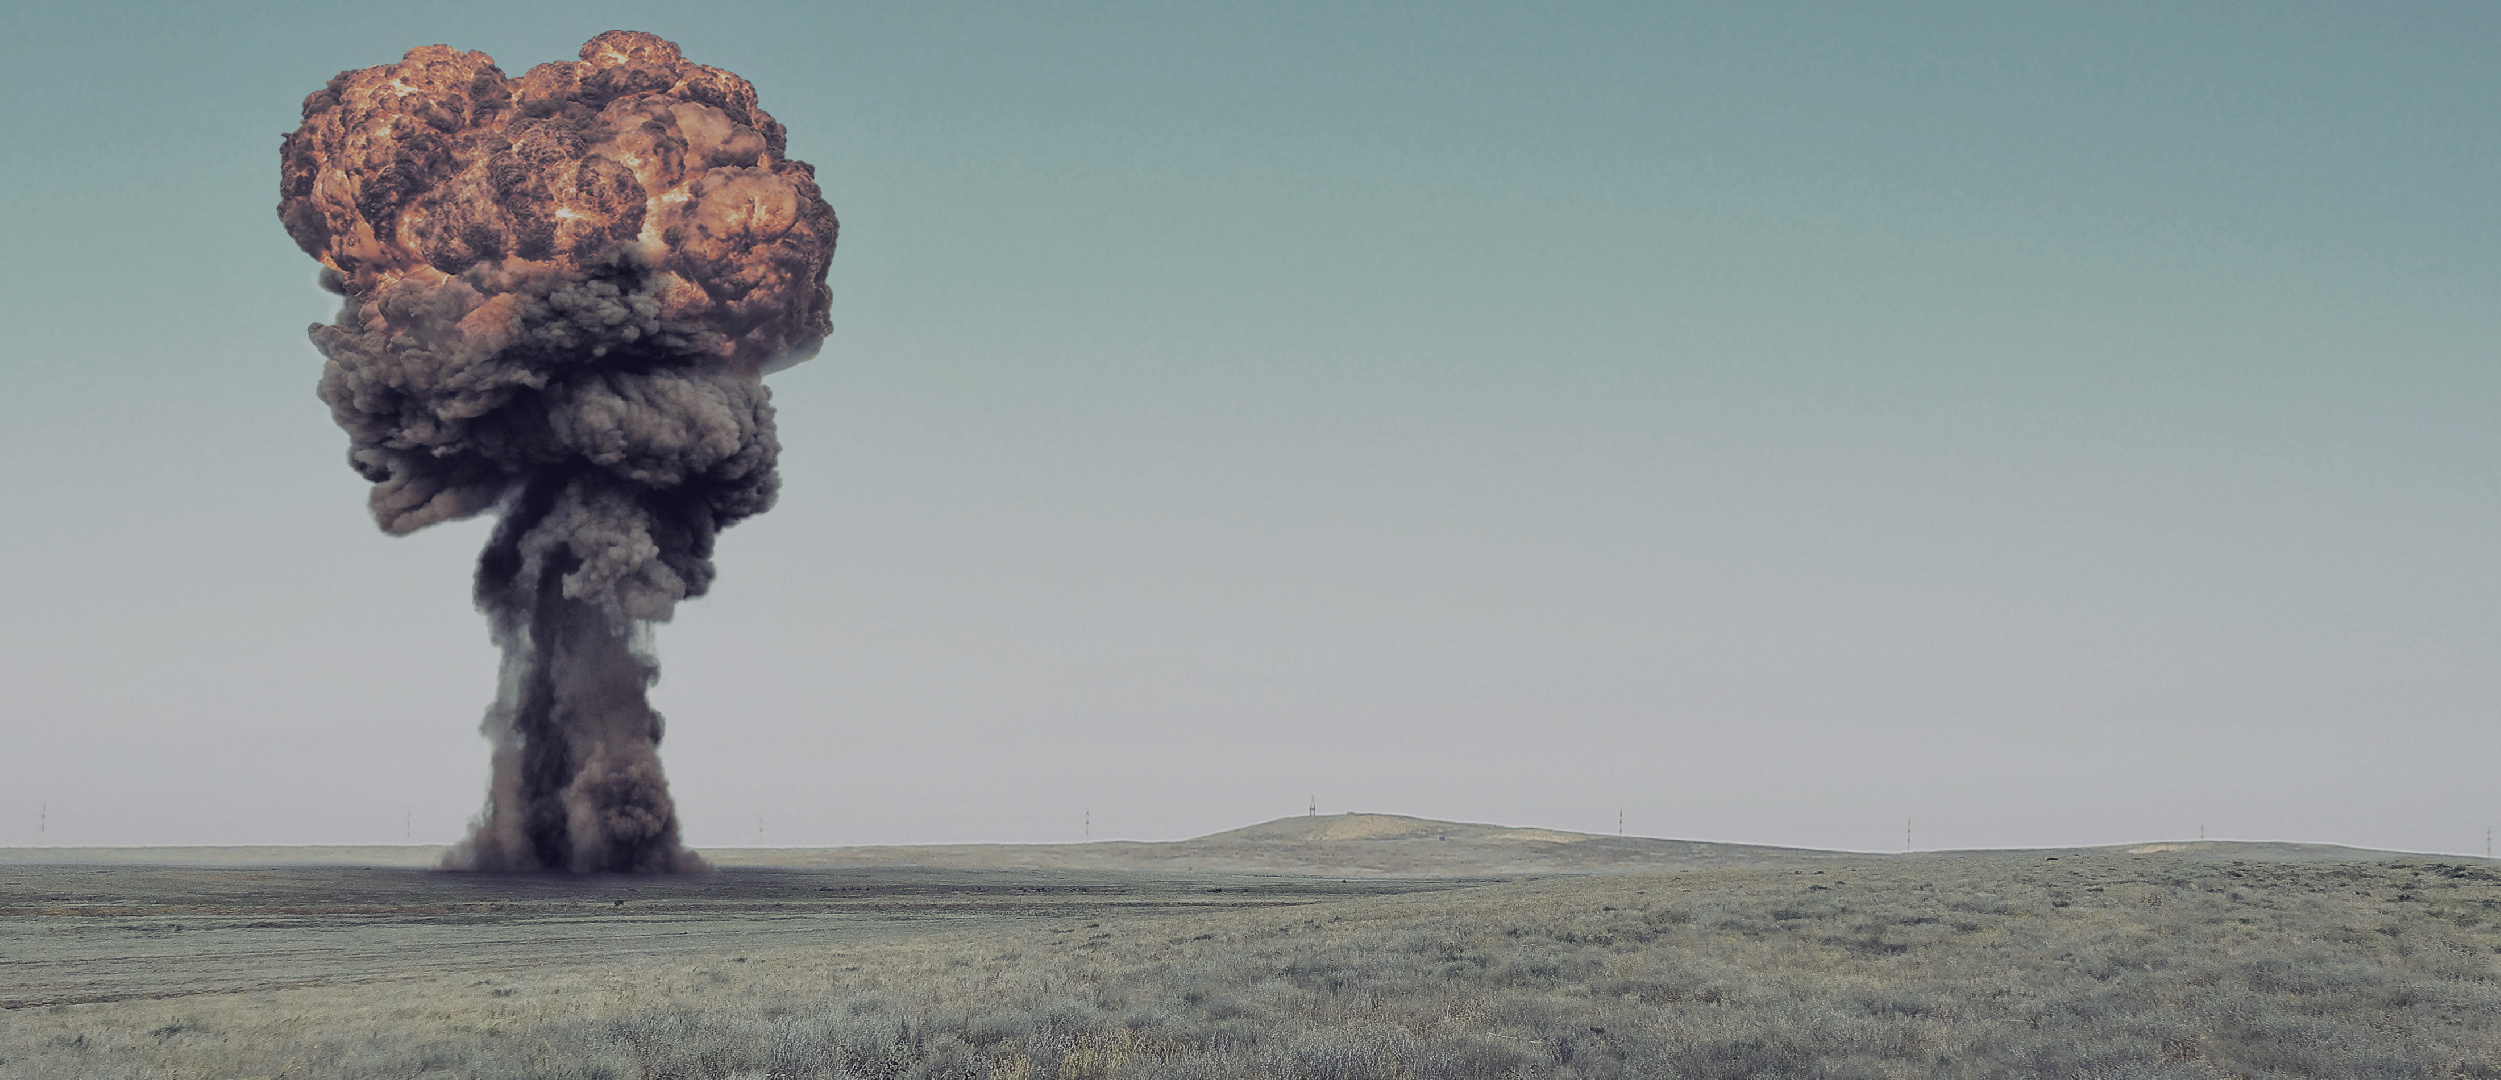 Полигон Невада. Подземный взрыв. Семипалатинск ядерные испытания. Ядерные испытания в пустыне Невада. Всеобъемлющем запрещении ядерных испытаний